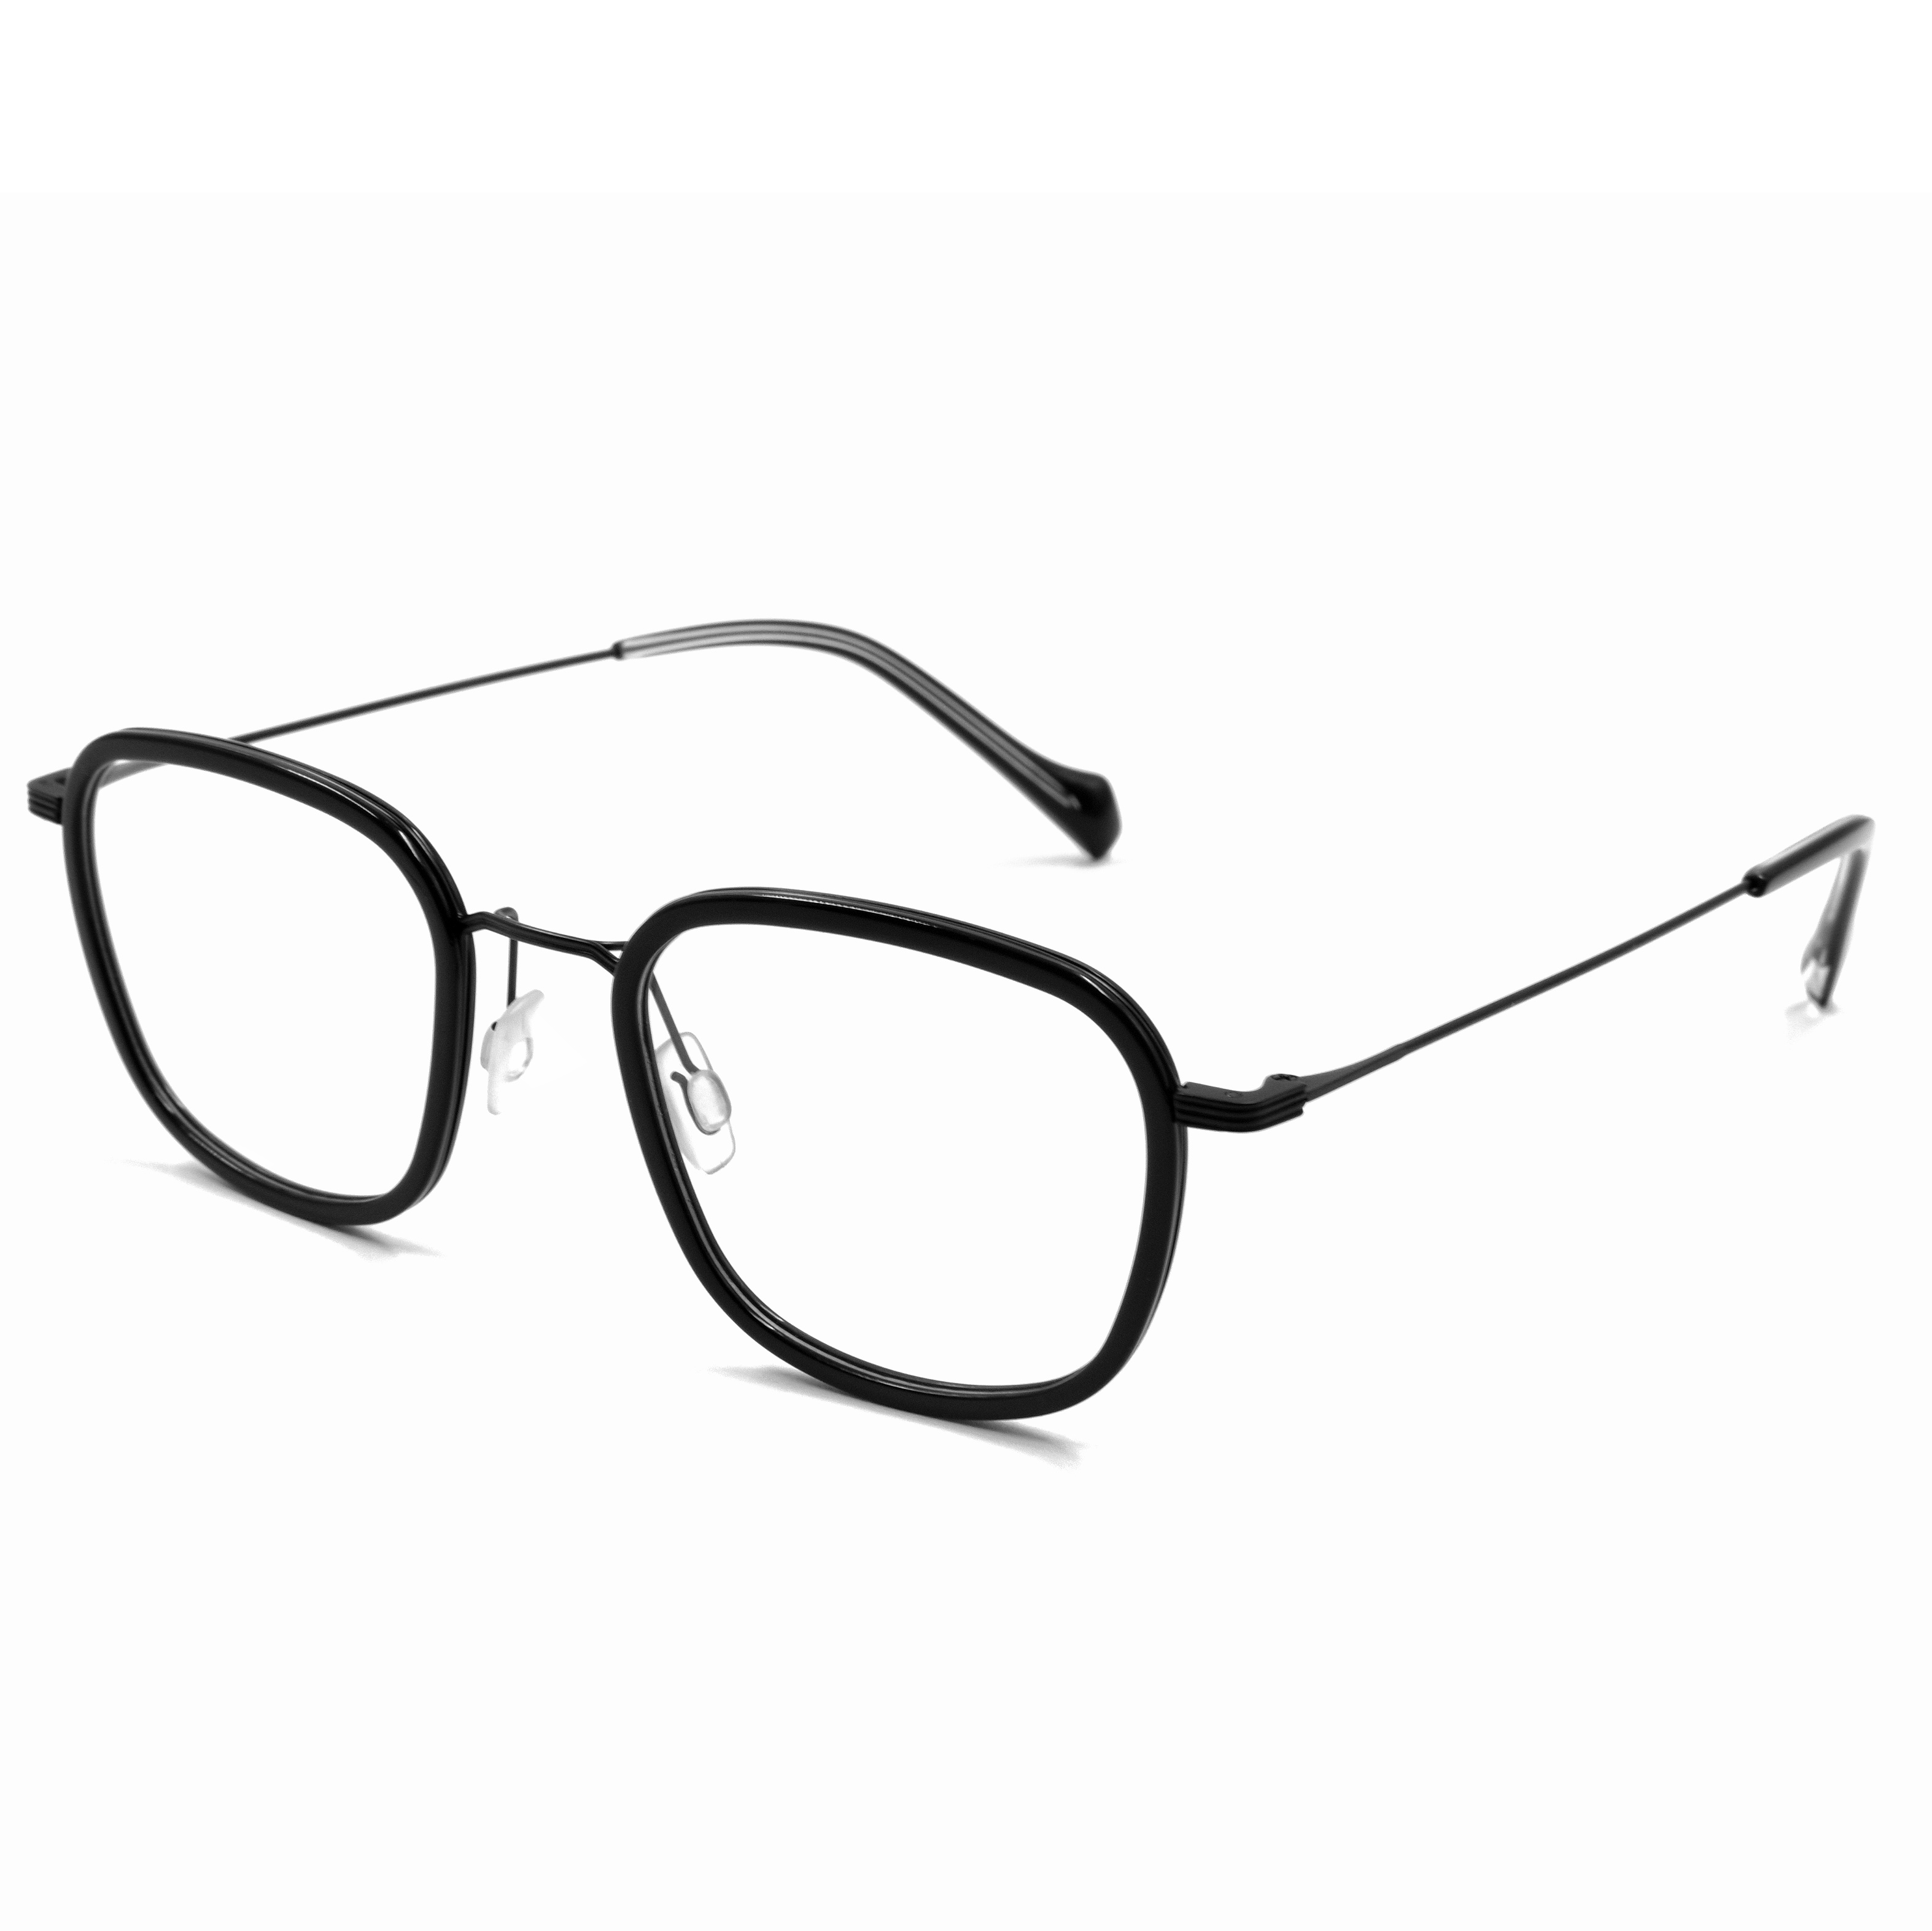 Eyeglasses Frames Anti Blue Light Glasses Women Spectacle Frames Glasses Frames River Optical